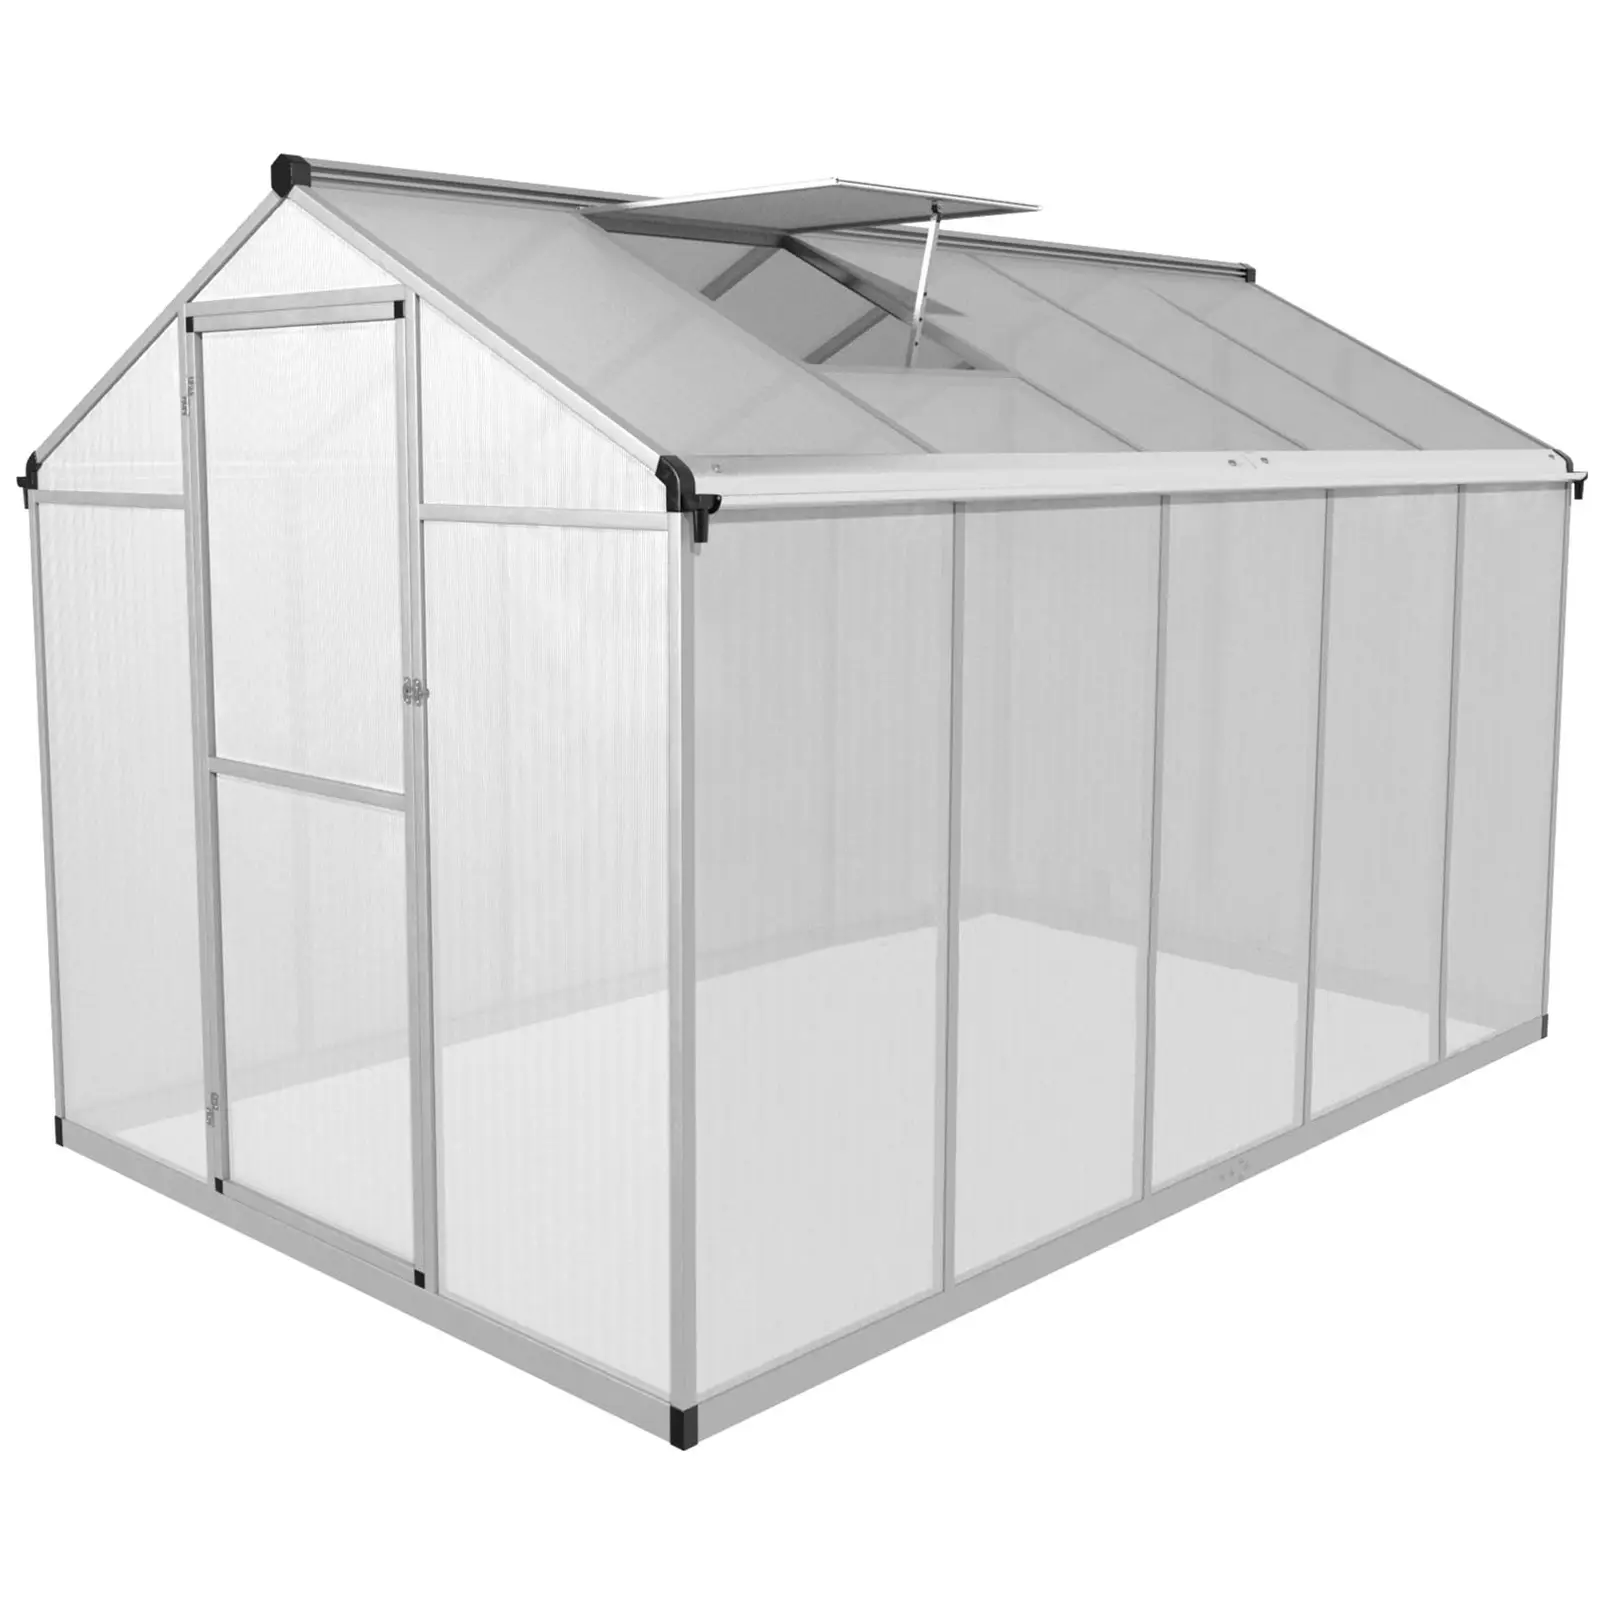 Greenhouse - 302 x 190 x 195 cm - polycarbonate + aluminium